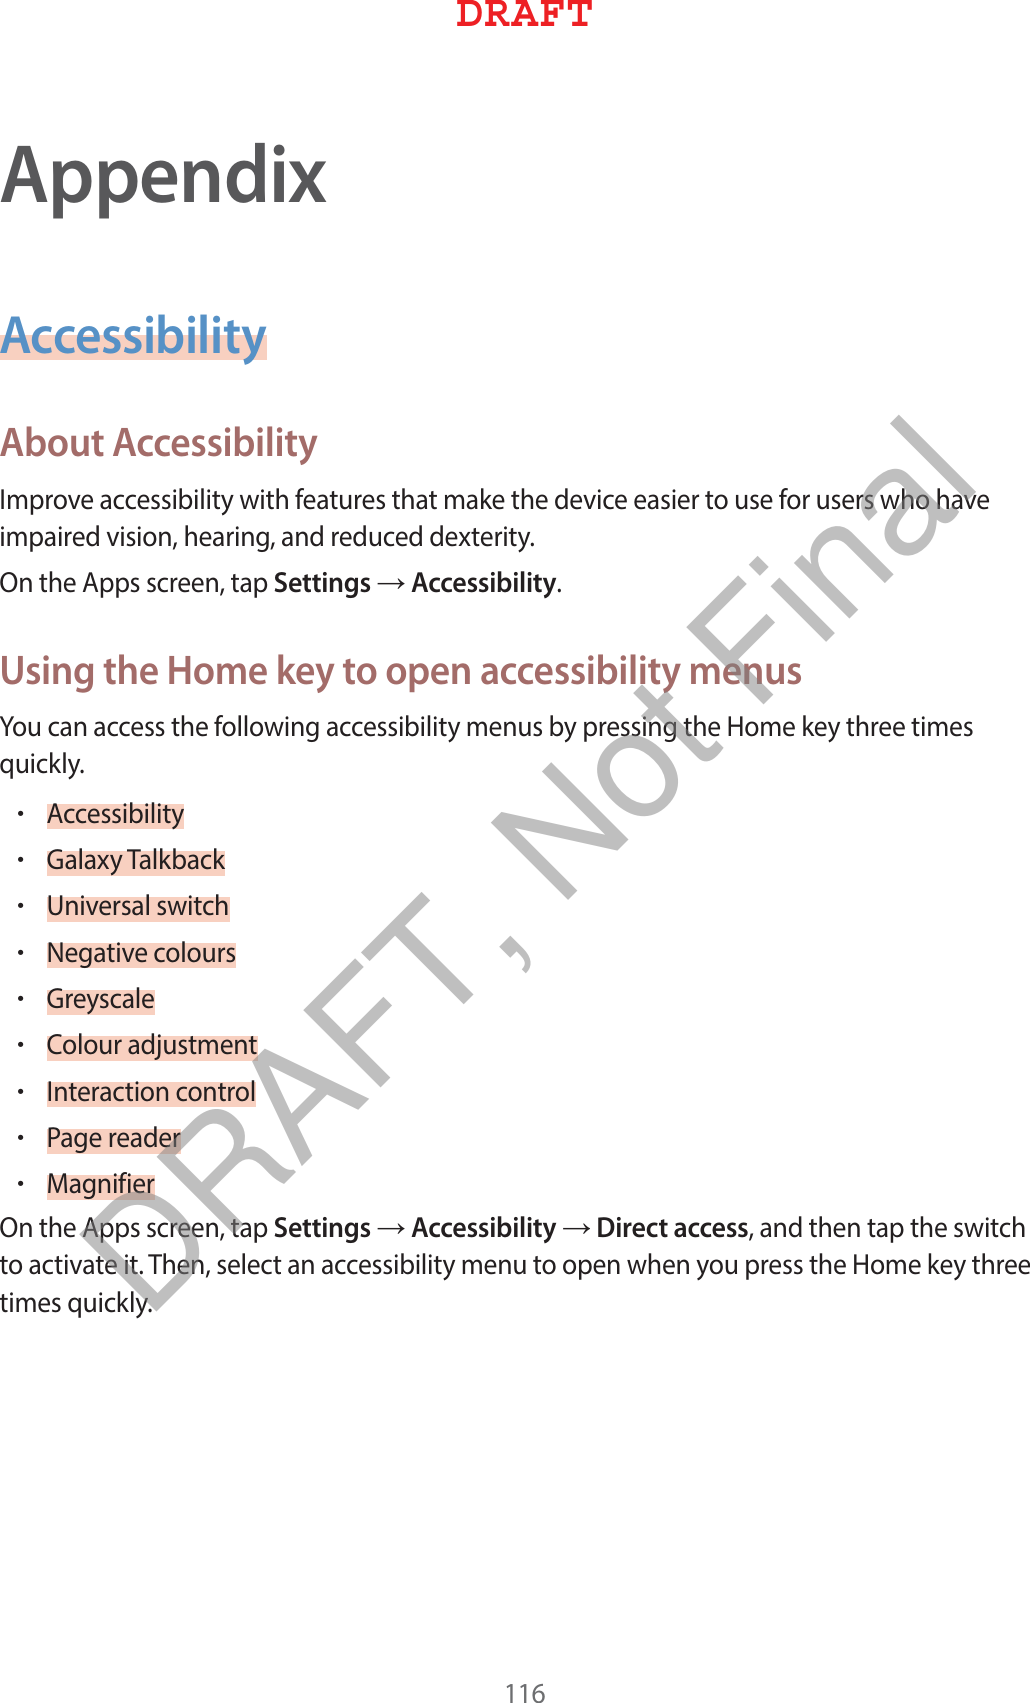 AppendixAccessibilityAbout Accessibility*NQSPWFBDDFTTJCJMJUZXJUIGFBUVSFTUIBUNBLFUIFEFWJDFFBTJFSUPVTFGPSVTFSTXIPIBWFJNQBJSFEWJTJPOIFBSJOHBOESFEVDFEEFYUFSJUZ0OUIF&quot;QQTTDSFFOUBQSettings→AccessibilityUsing the Home key to open accessibility menus:PVDBOBDDFTTUIFGPMMPXJOHBDDFTTJCJMJUZNFOVTCZQSFTTJOHUIF)PNFLFZUISFFUJNFTRVJDLMZr&quot;DDFTTJCJMJUZr(BMBYZ5BMLCBDLr6OJWFSTBMTXJUDIr/FHBUJWFDPMPVSTr(SFZTDBMFr$PMPVSBEKVTUNFOUr*OUFSBDUJPODPOUSPMr1BHFSFBEFSr.BHOJGJFS0OUIF&quot;QQTTDSFFOUBQSettings→Accessibility→Direct accessBOEUIFOUBQUIFTXJUDIUPBDUJWBUFJU5IFOTFMFDUBOBDDFTTJCJMJUZNFOVUPPQFOXIFOZPVQSFTTUIF)PNFLFZUISFFUJNFTRVJDLMZ%3&quot;&apos;5DRAFT, Not Final